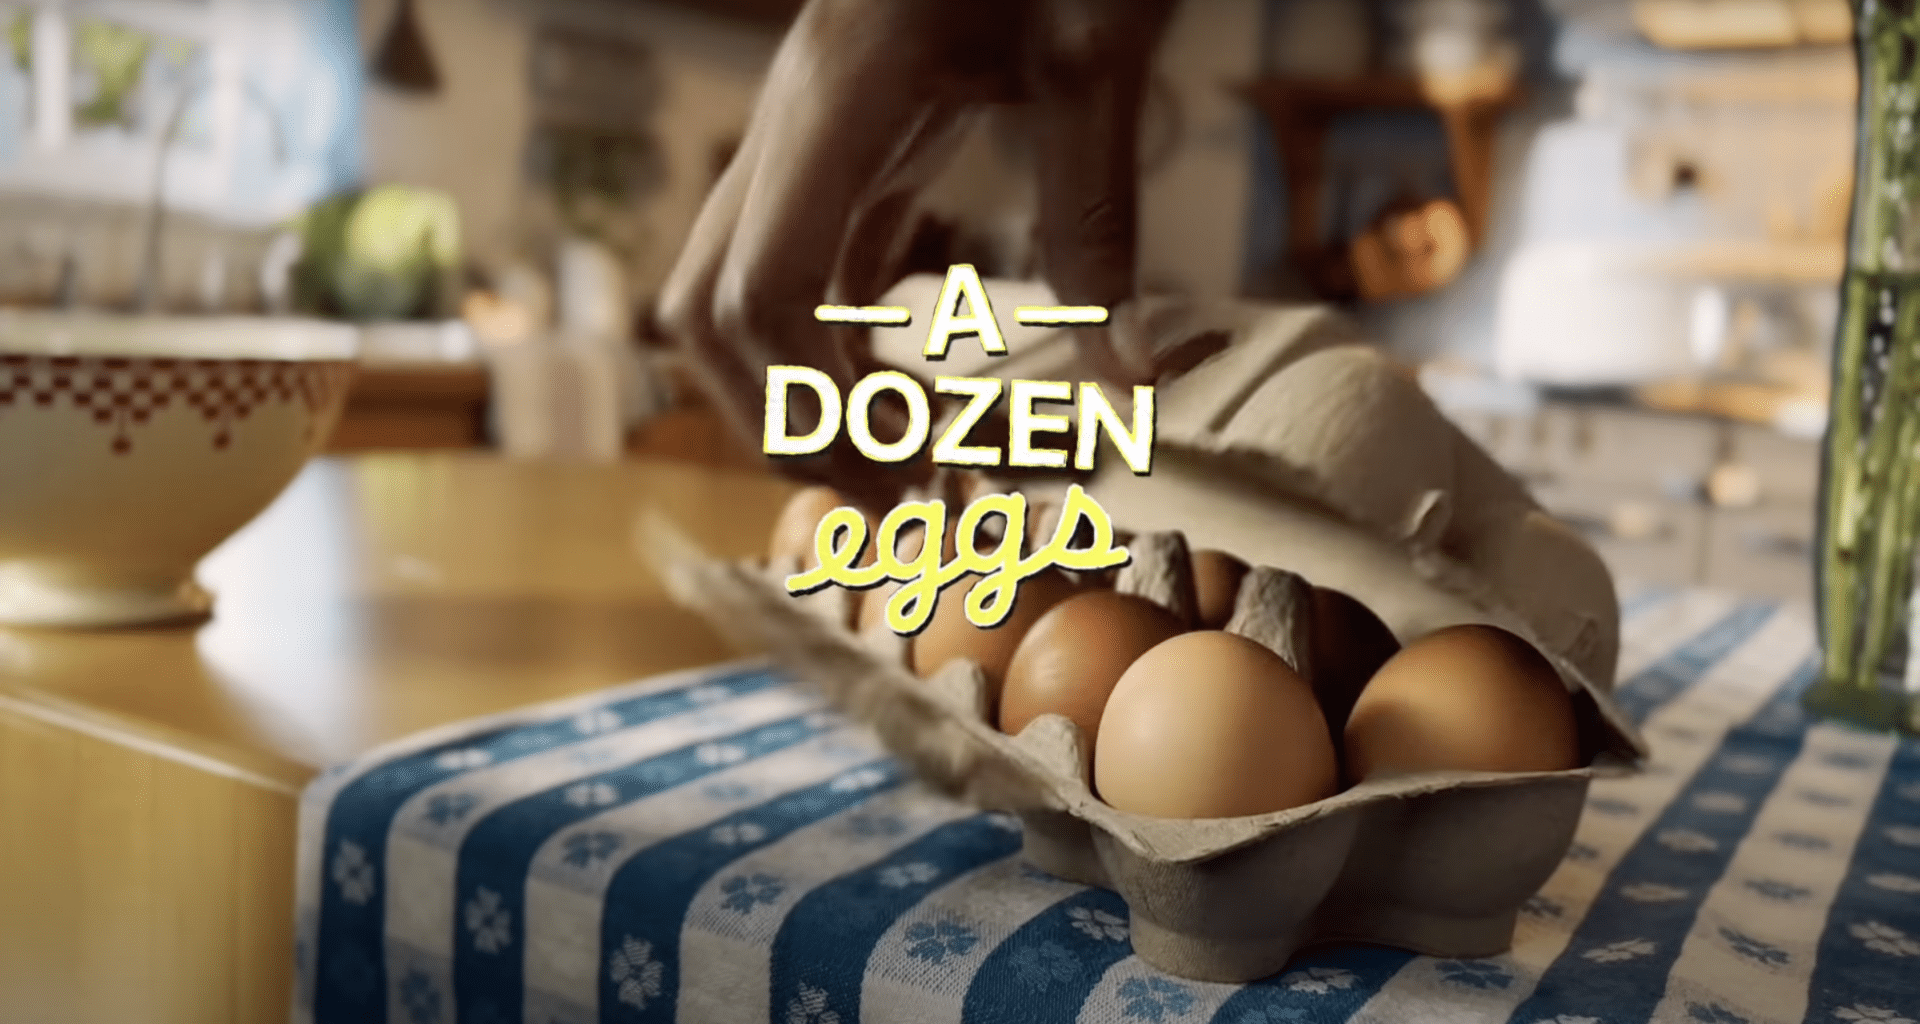 Vídeo "A Dozen Eggs" da campanha "Shot on iPhone"